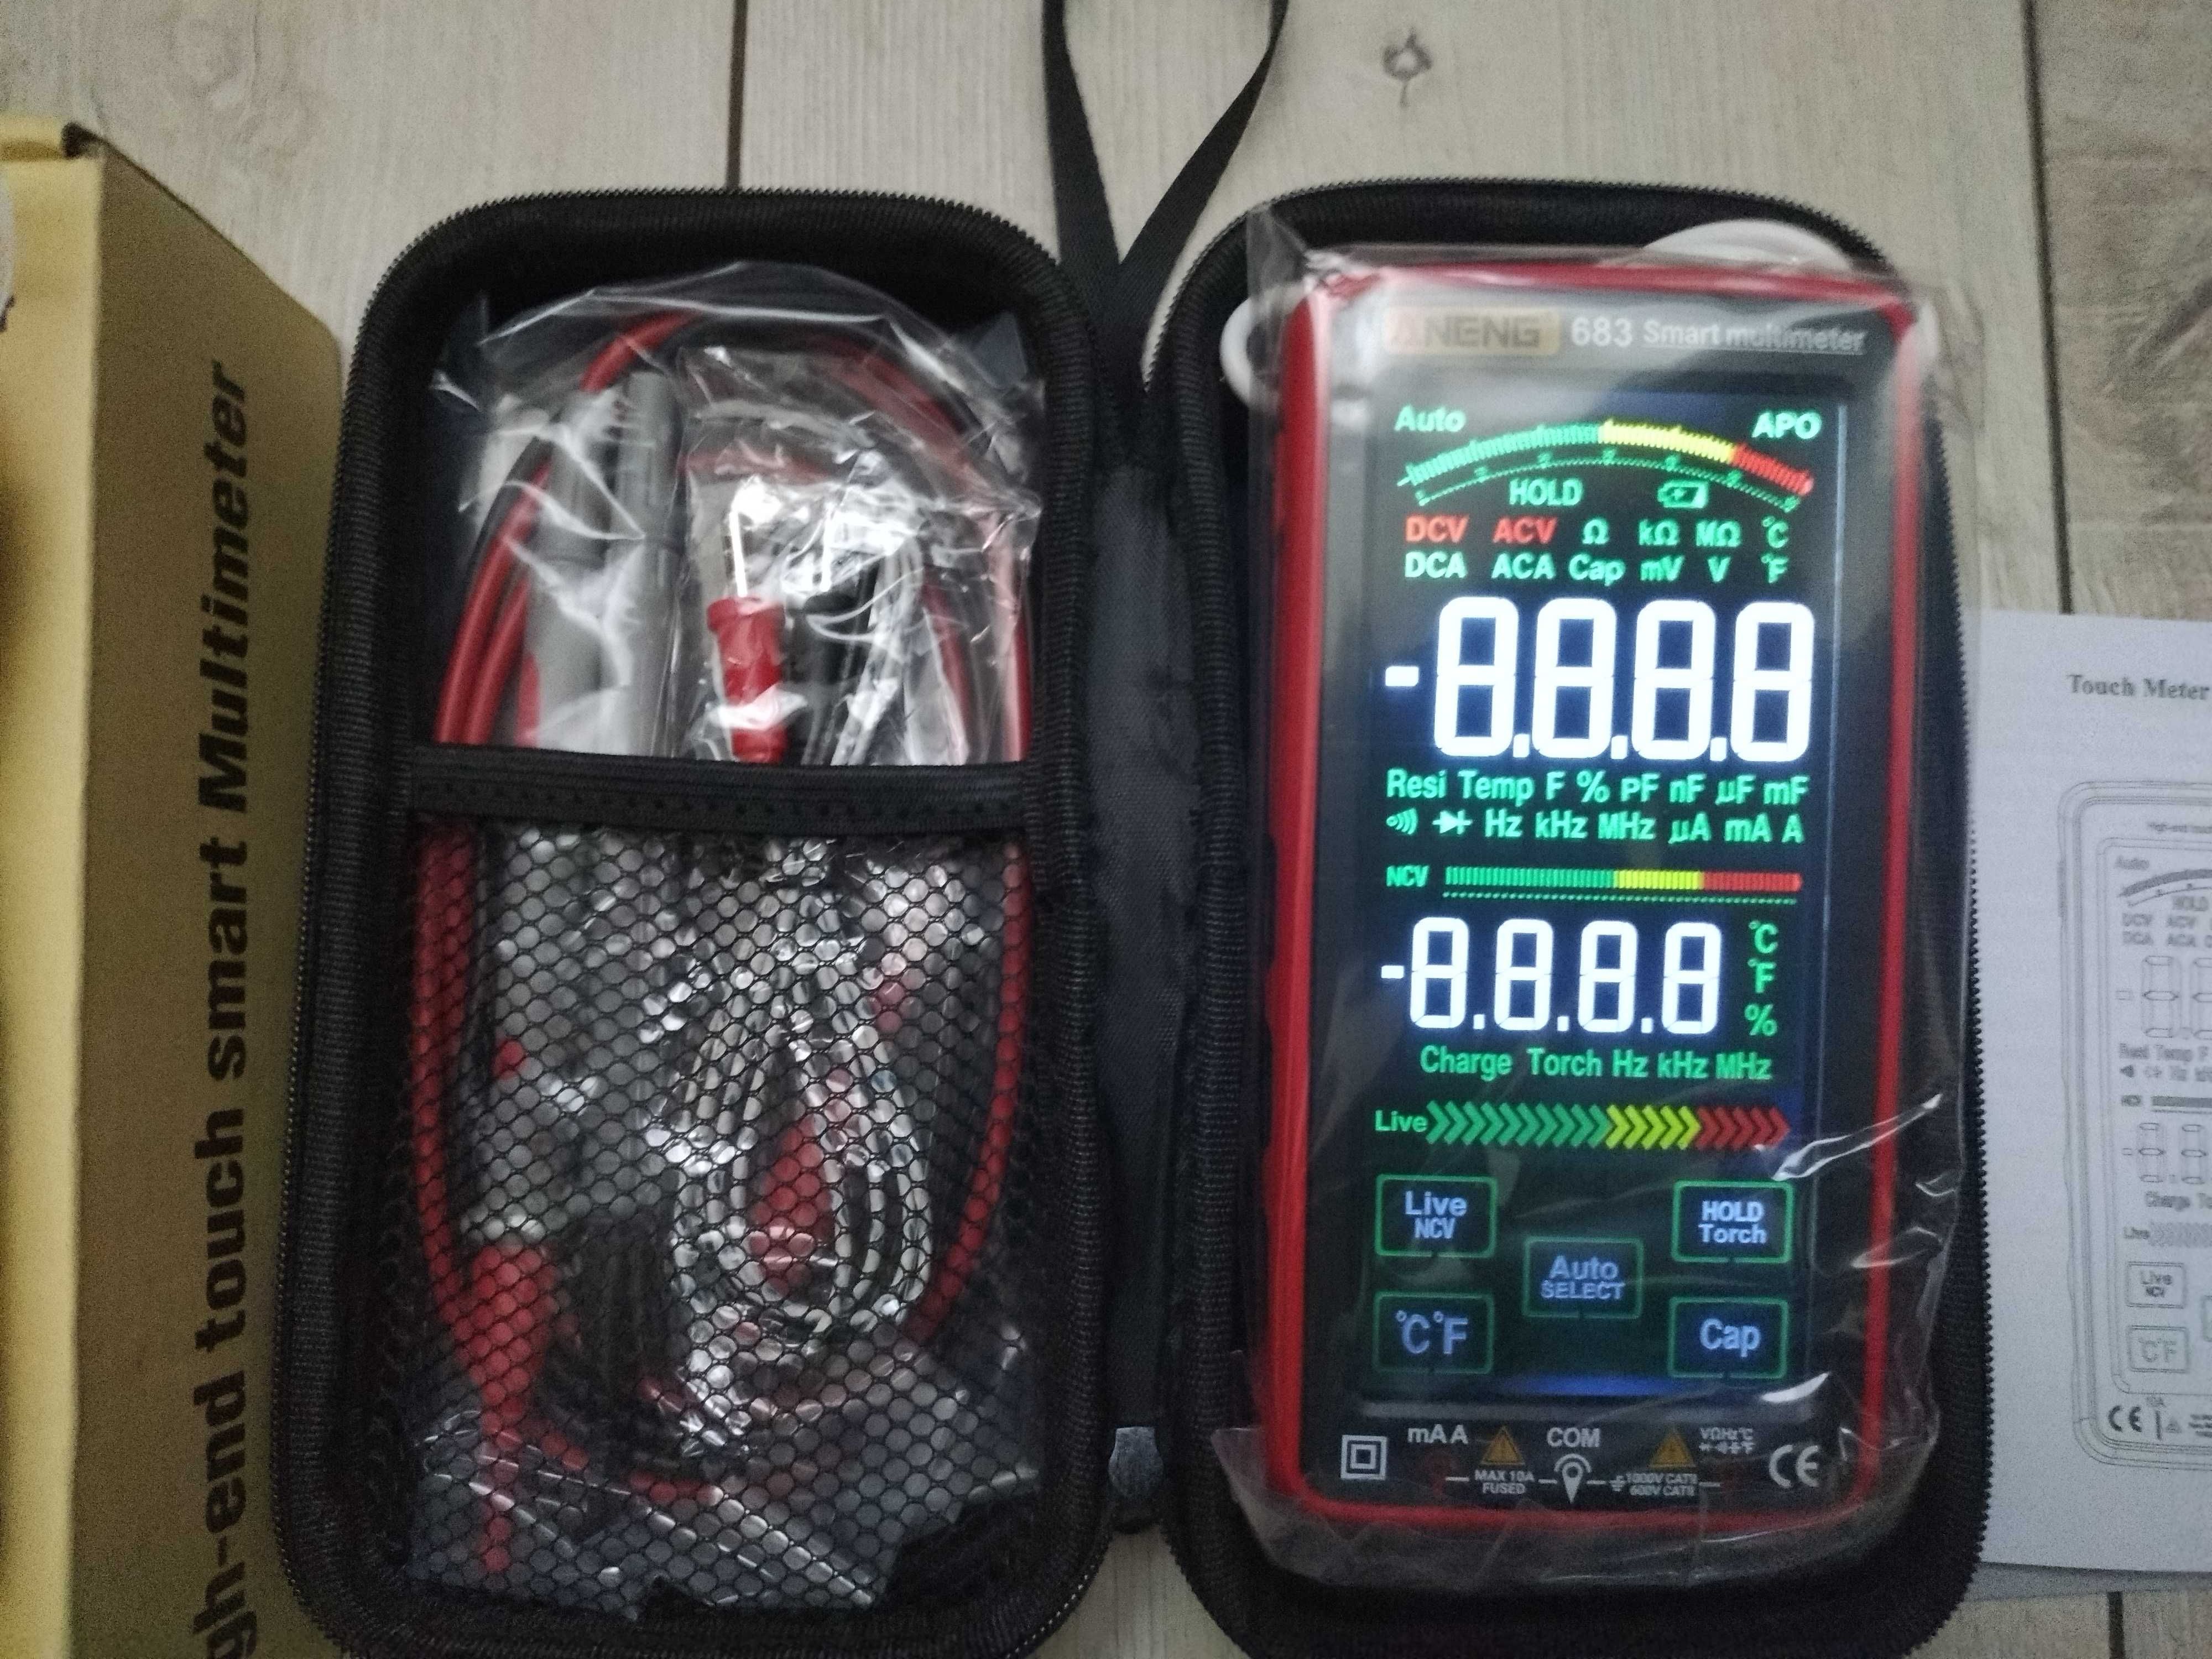 Мультиметр ANENG 683 Pro, тестер, индикатор напряжения, NVC, сенсорный